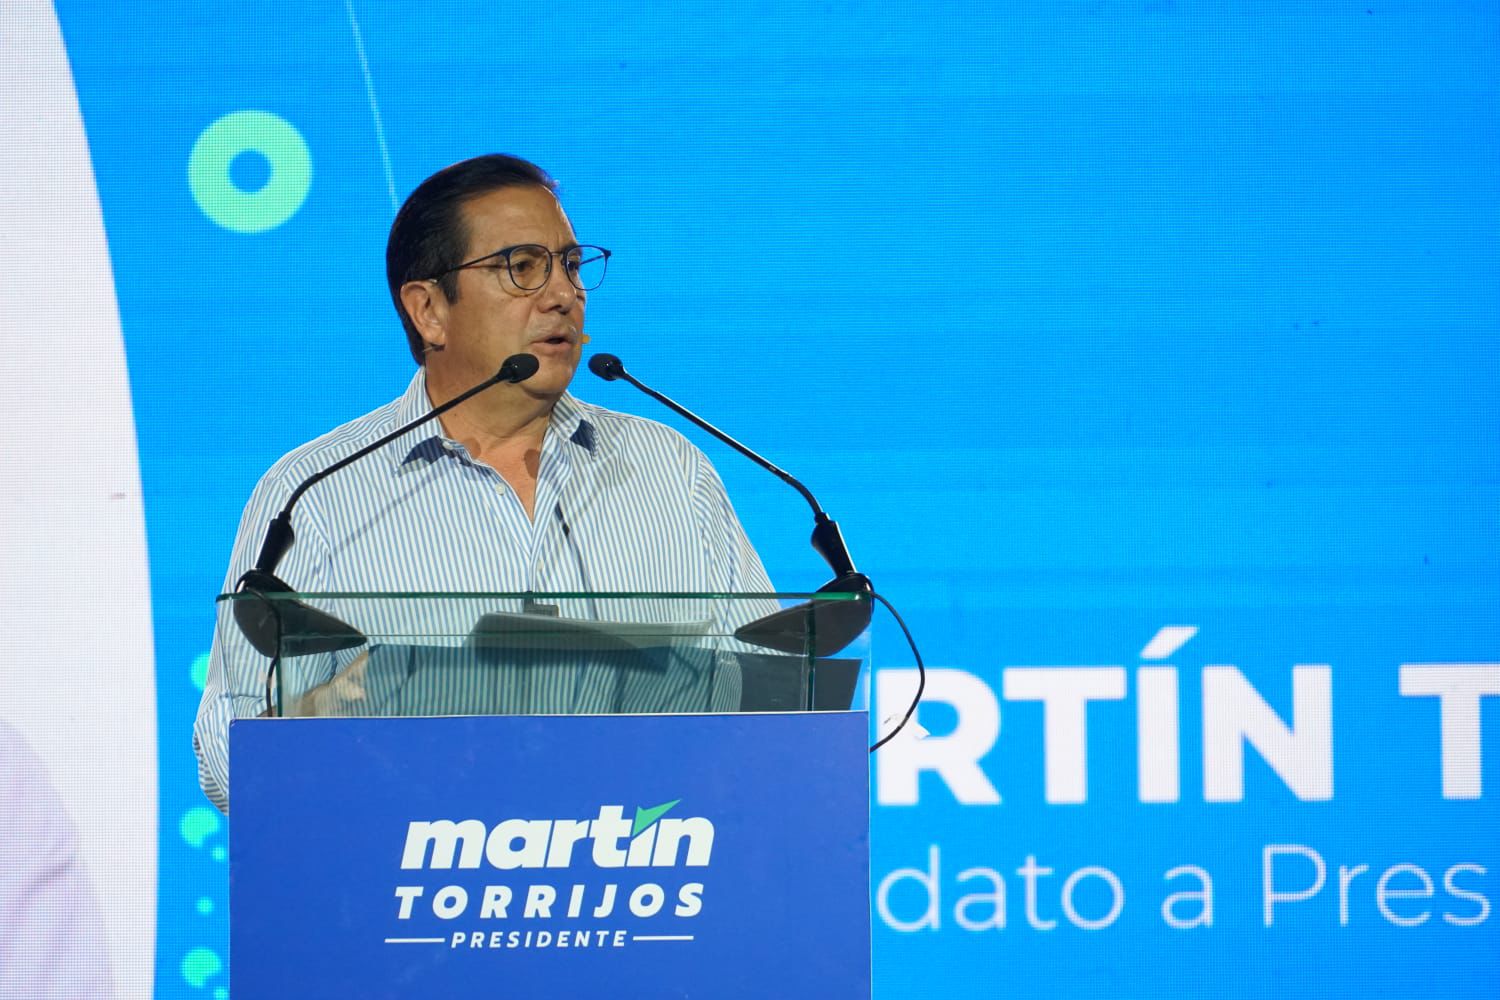 Se acabaron los negocios dentro de la salud pública, asegura Martín Torrijos